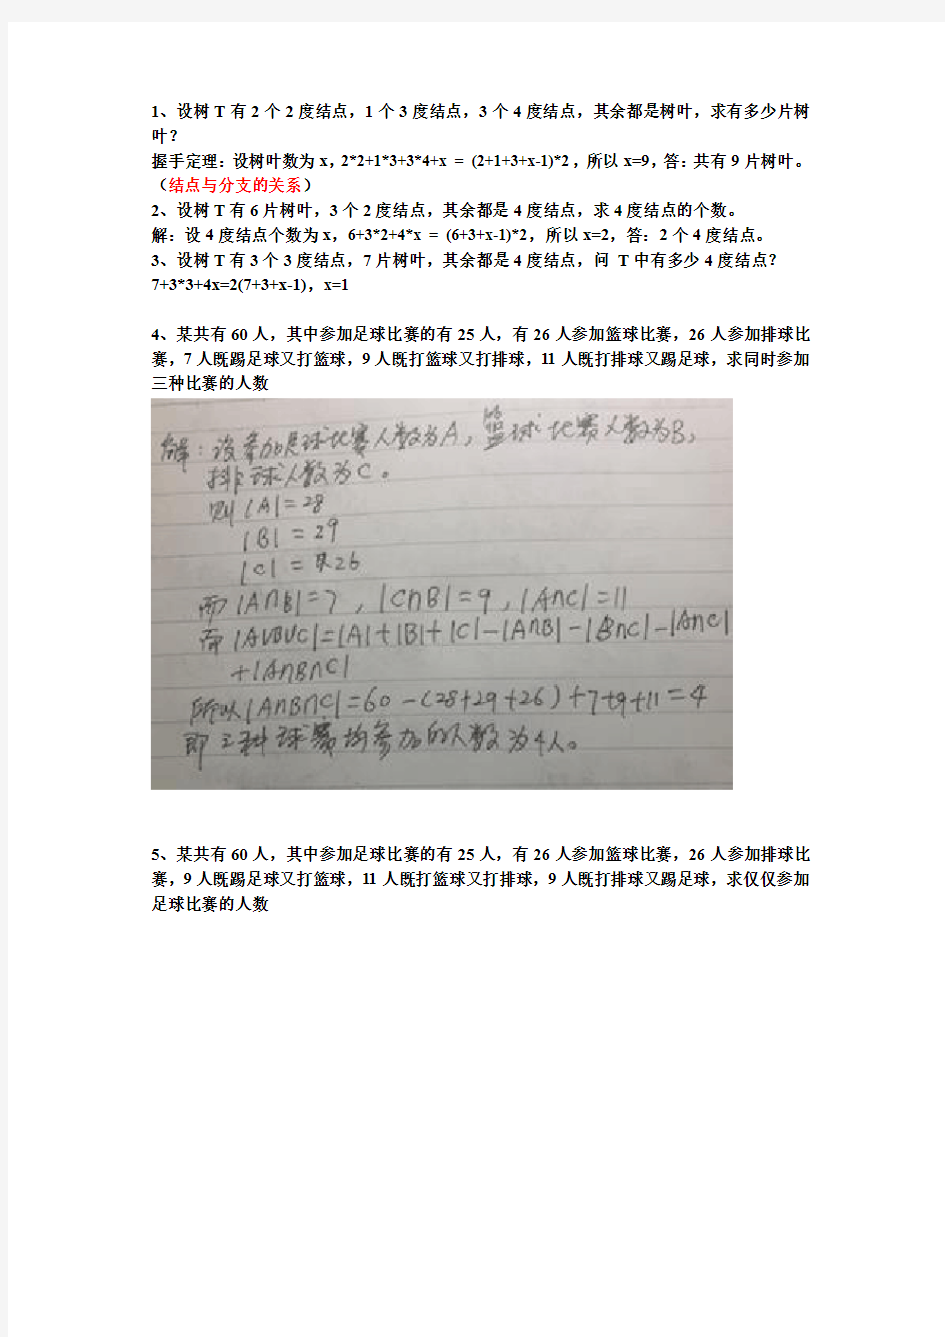 华南师范大学-离散数学-期末考试 常见计算题